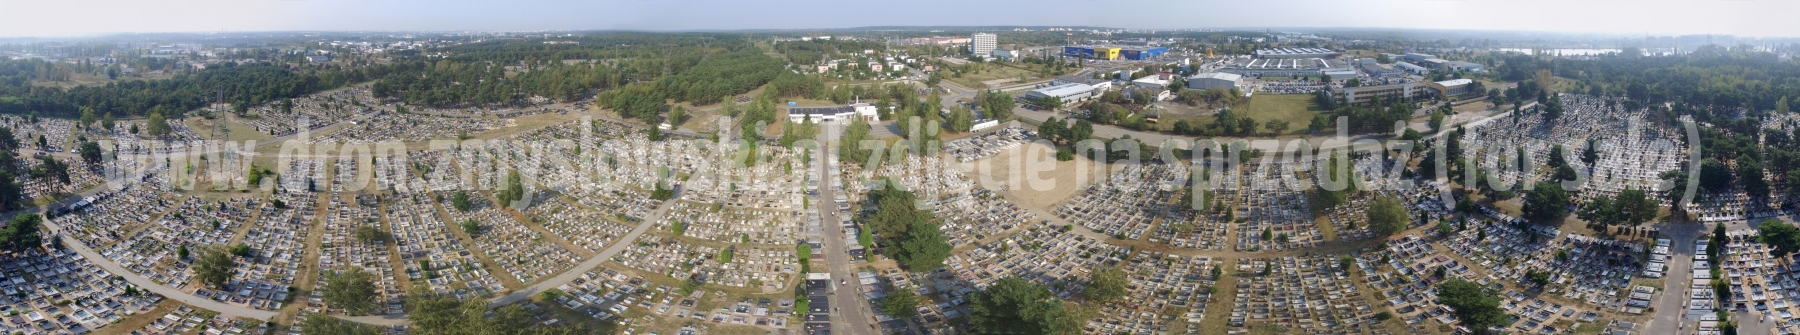 Bydgoszcz - cmentarz na ul. Wiślanej z drona - 2016